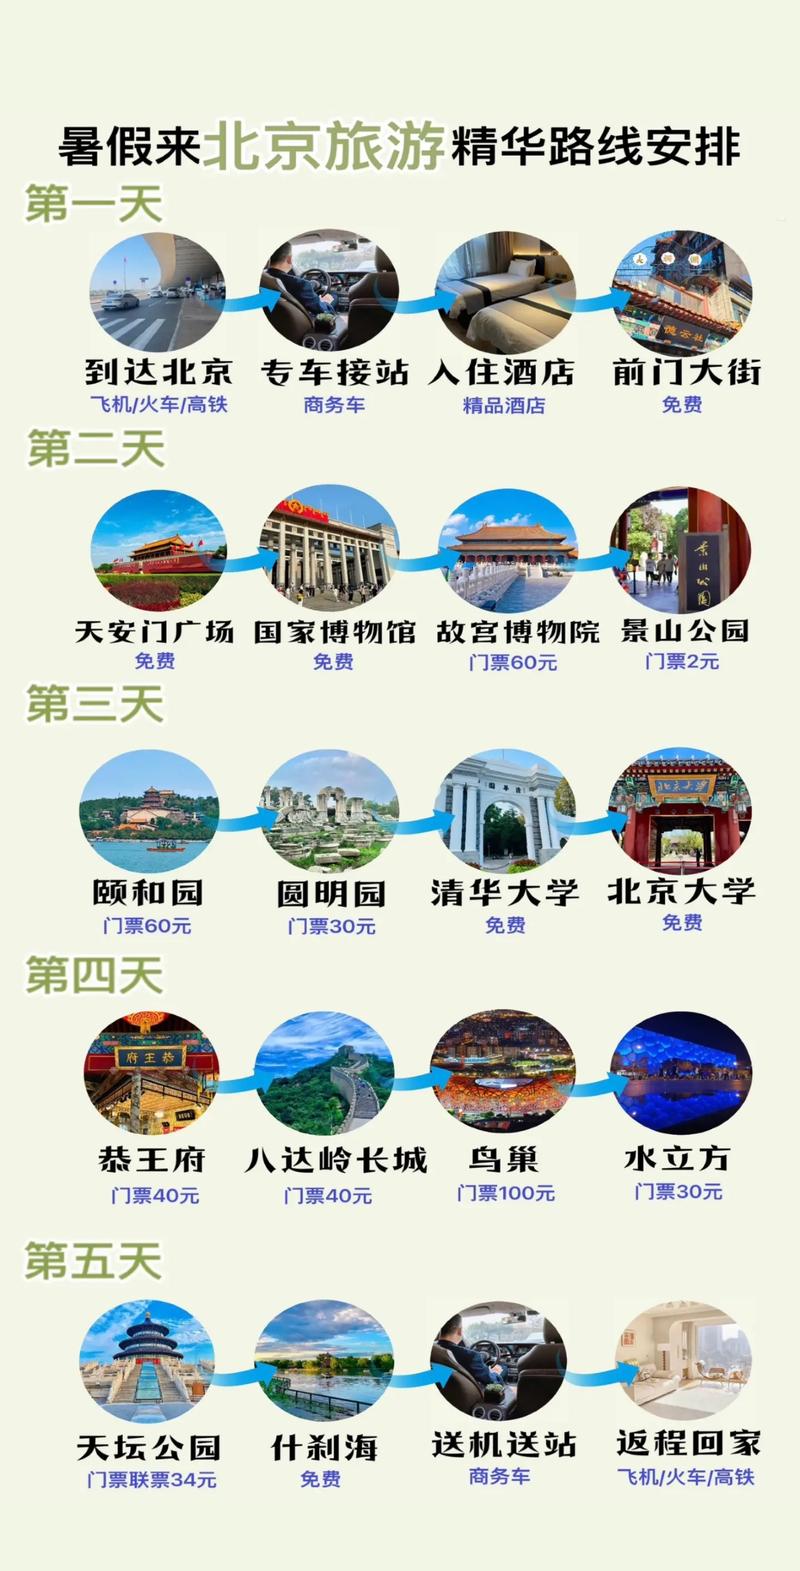 北京旅游景点排行榜